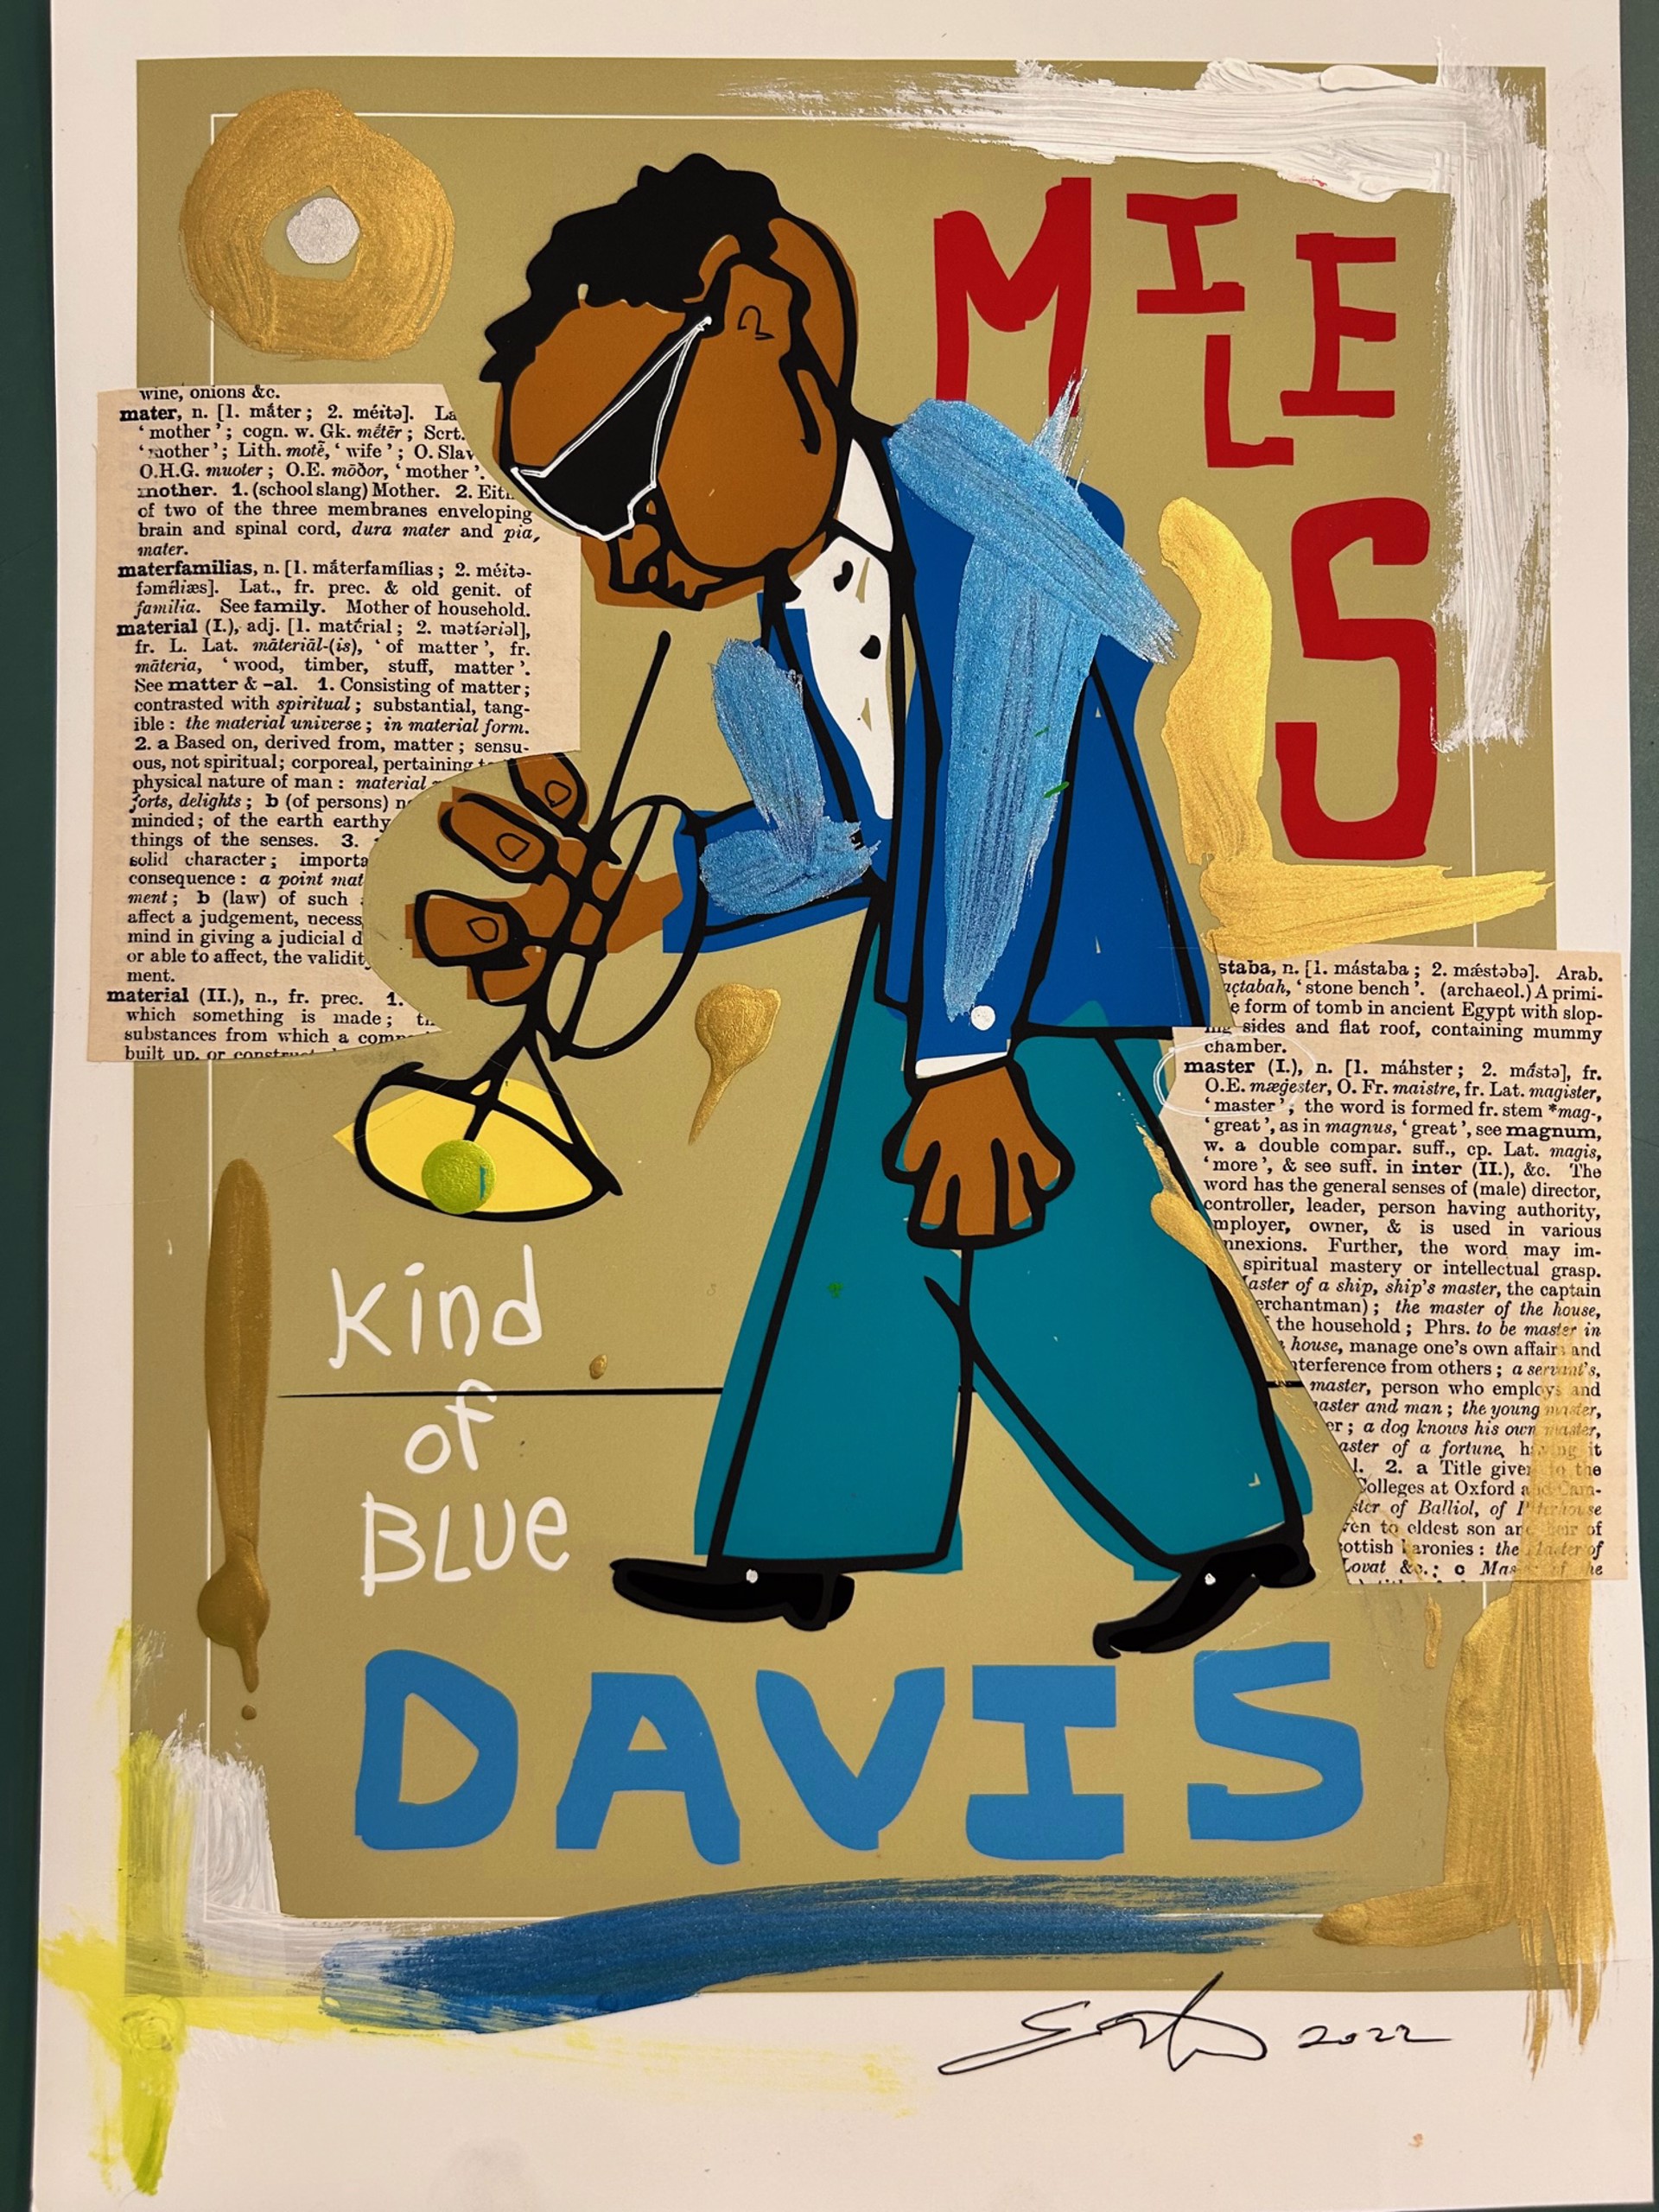 "Miles Davis" by Easton Davy